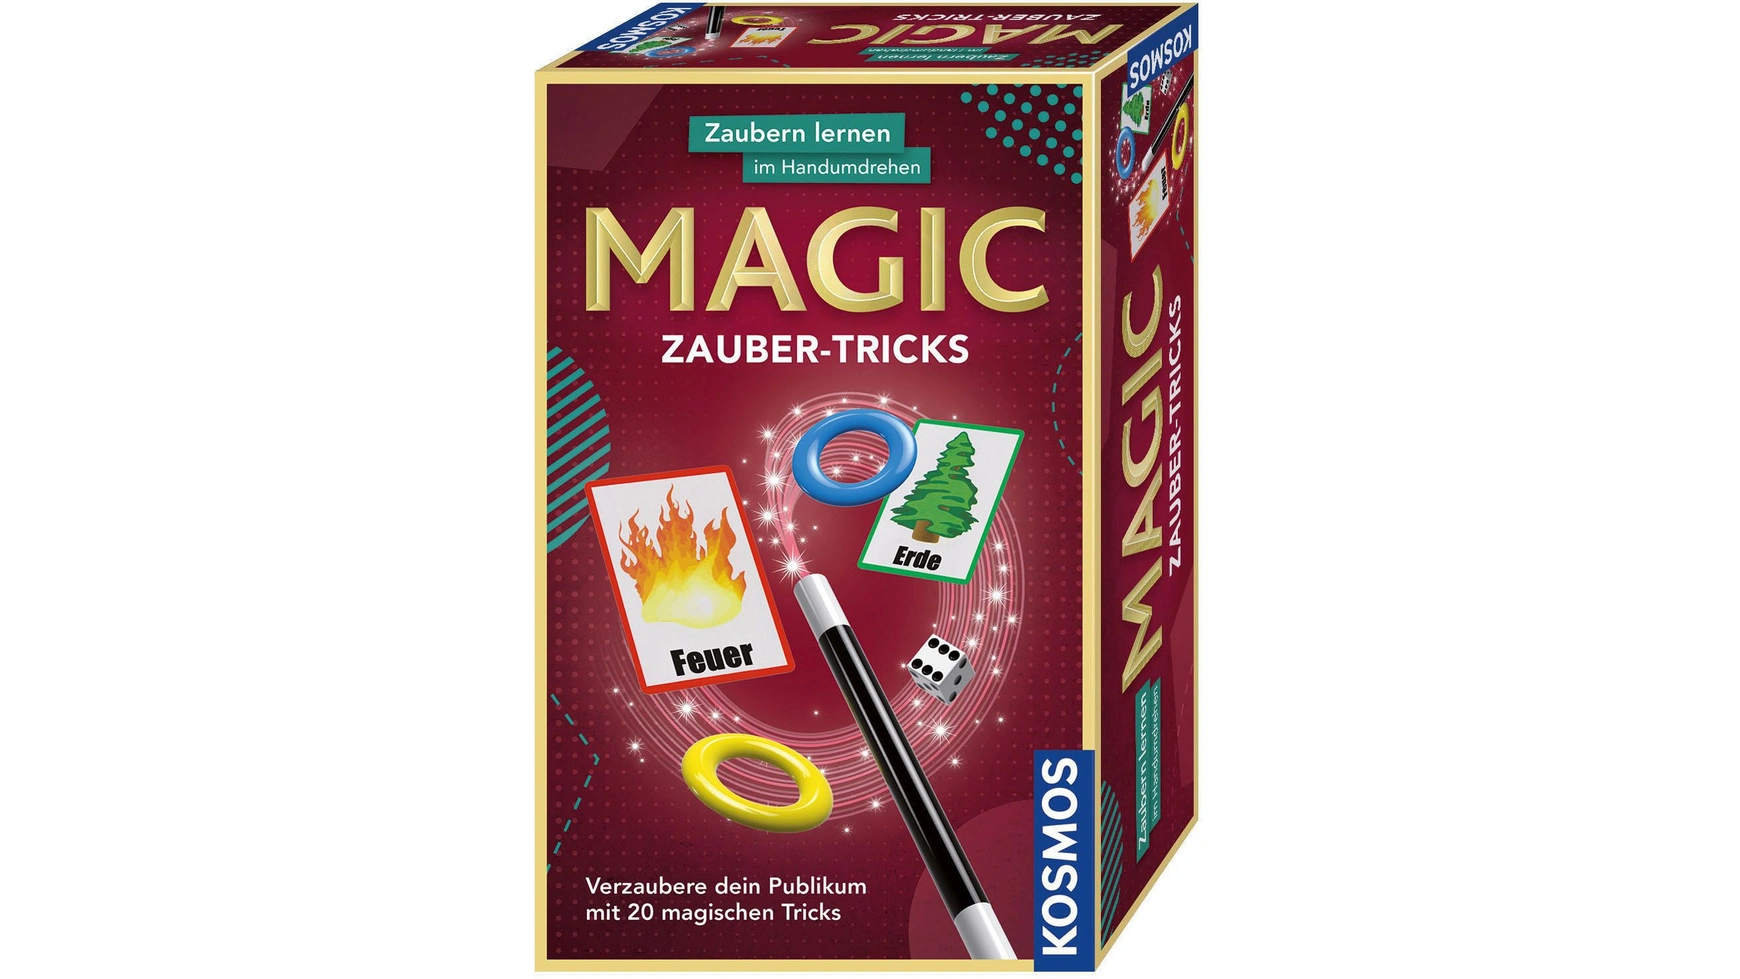 маленькая дверь от roddy mcghie карточка волшебные трюки трюки иллюзии магические реквизиты волшебники уличный магизм сила колода Волшебные трюки научитесь магии в кратчайшие сроки Kosmos